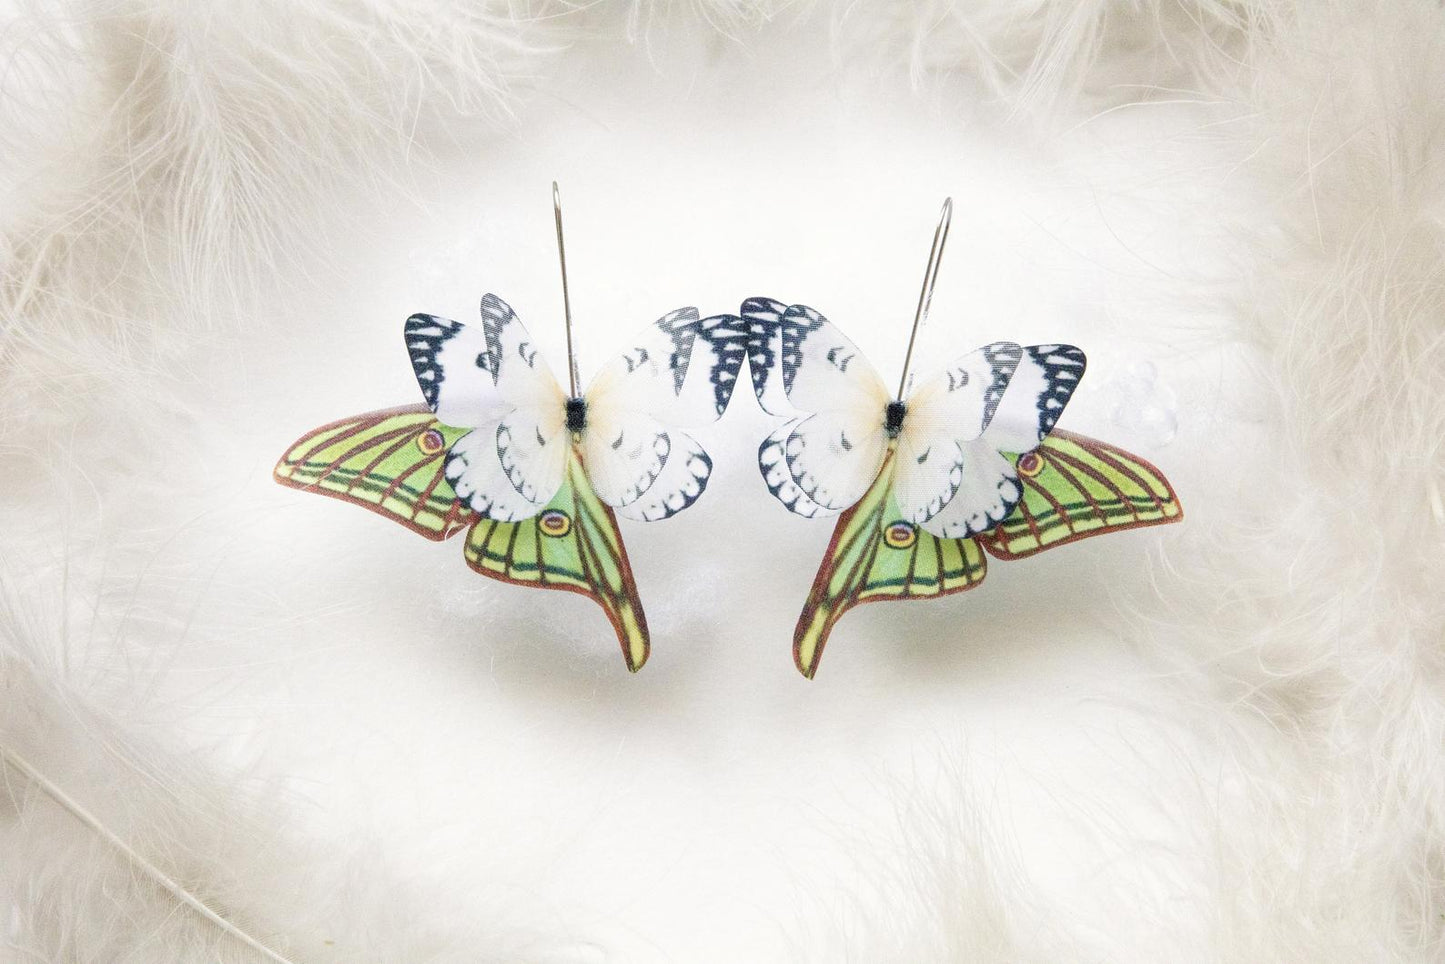 Ivory butterfly wing earrings in boho style